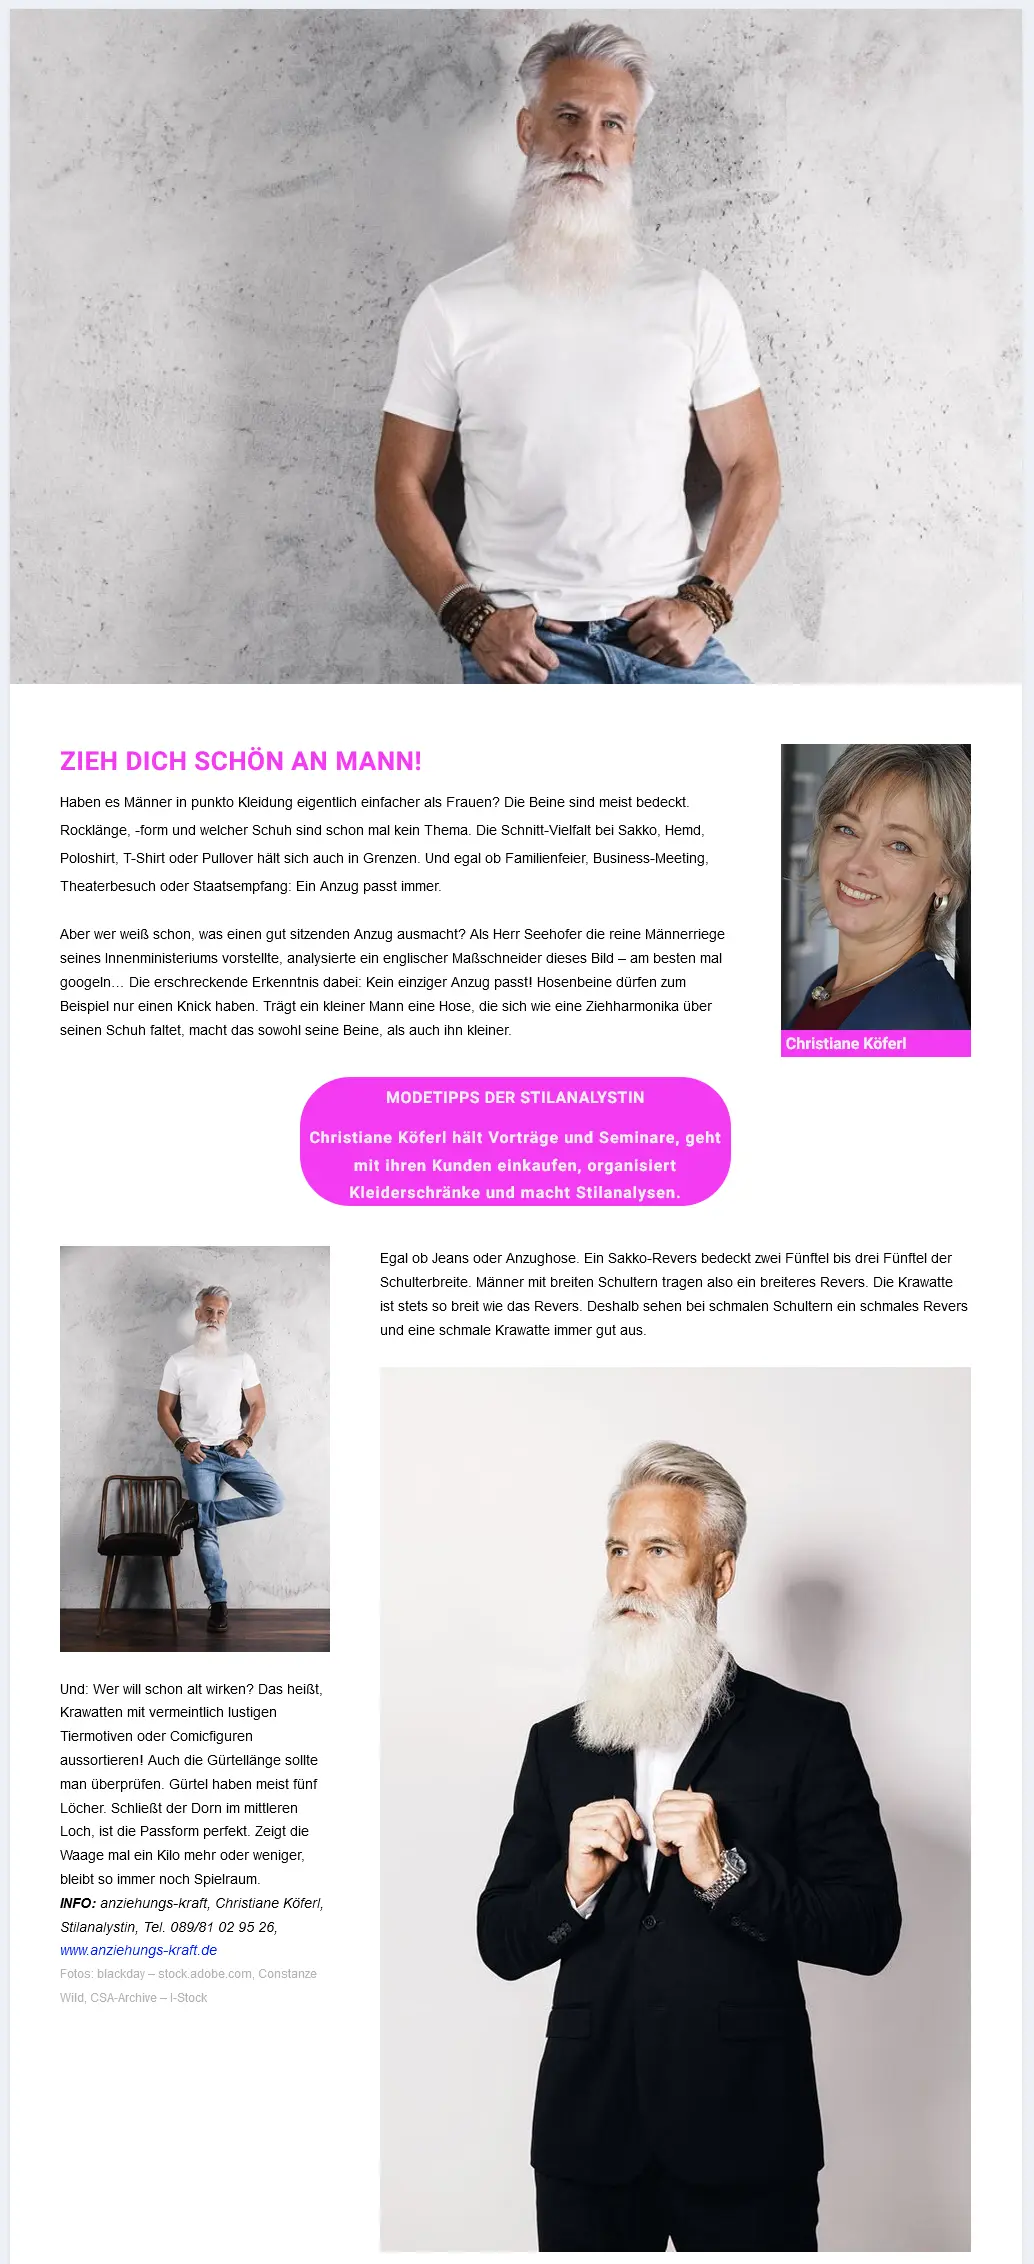 Screenshot Männermode Treffpunkt 55plus Onlinemagazin. Medien mit Älteren für Ältere.